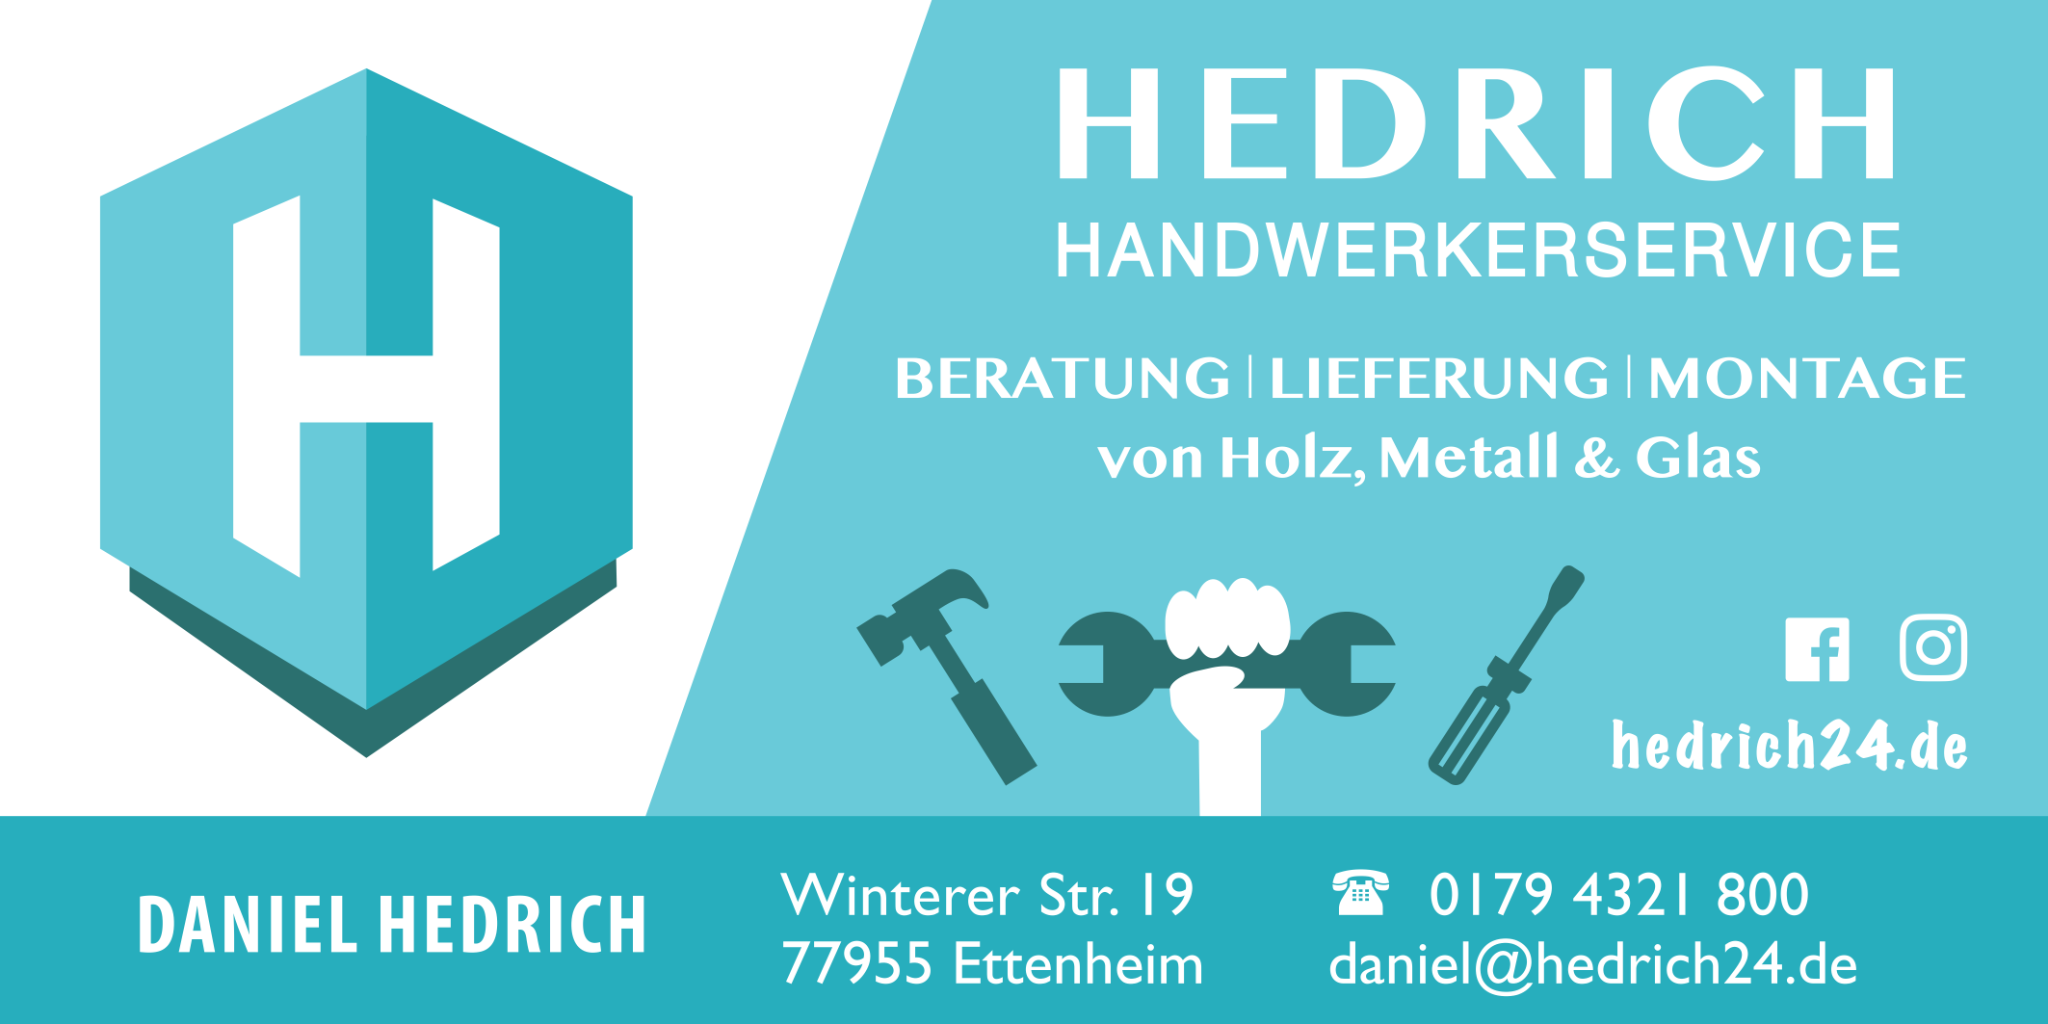 Hedrich Handwerkerservice